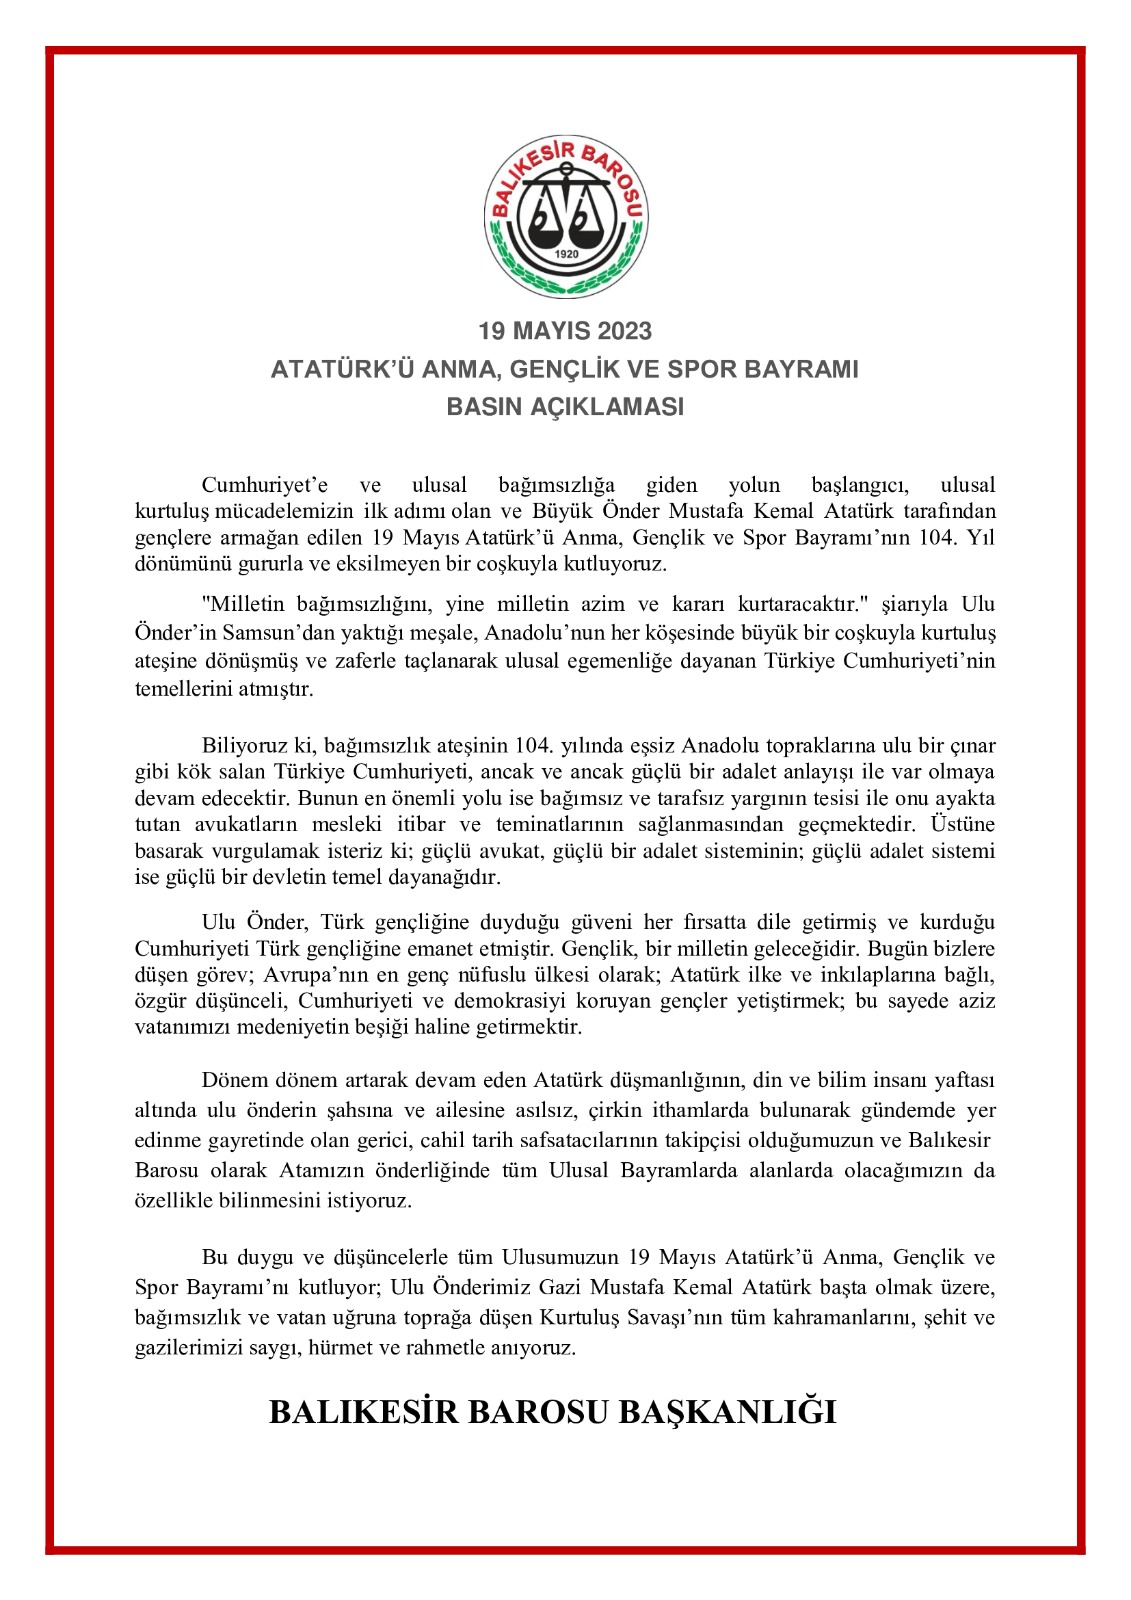 Balıkesir Barosu 19 Mayıs Basın Açıklaması